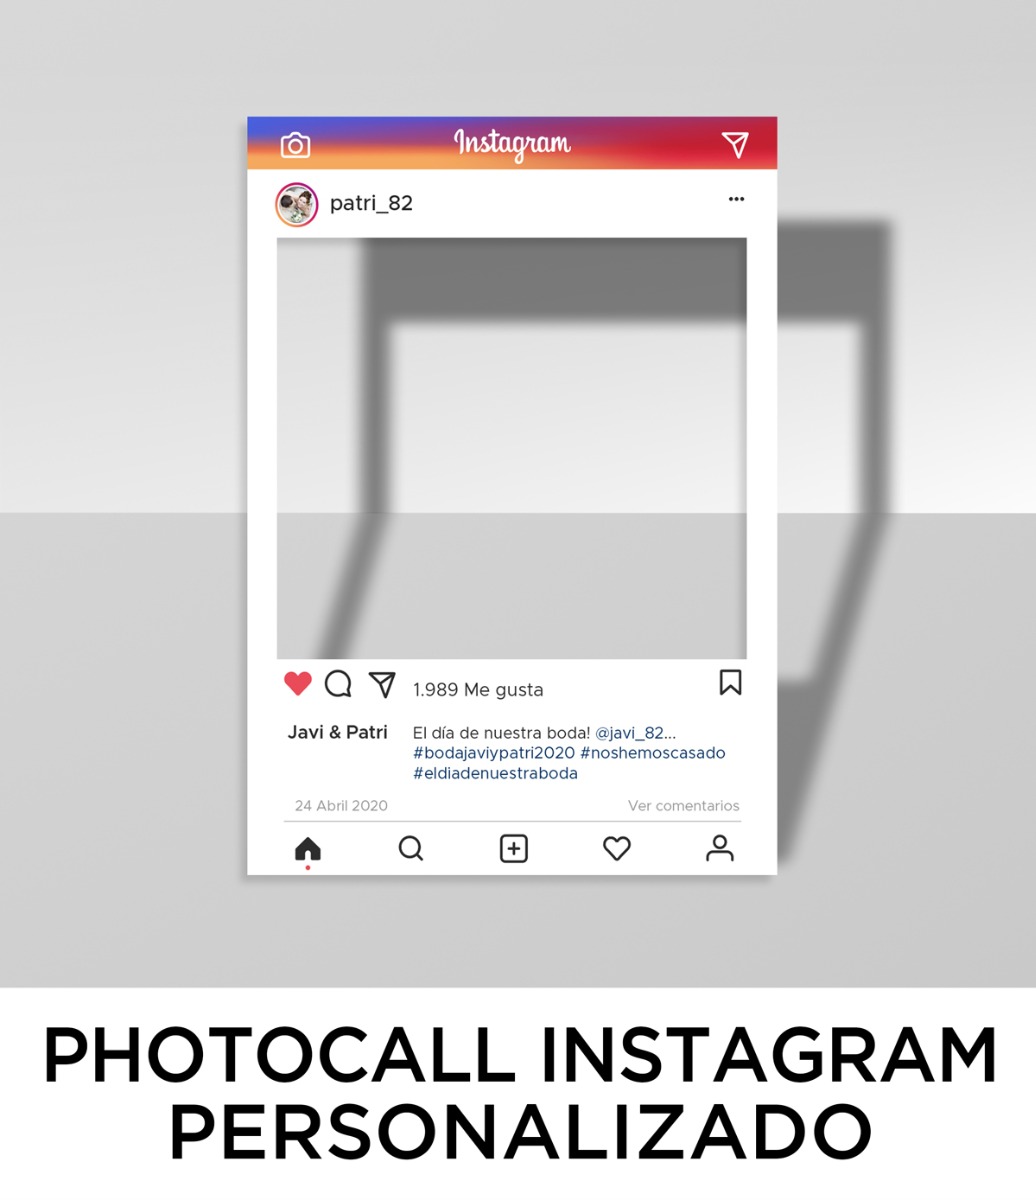 Photocall Instagram Personalizado